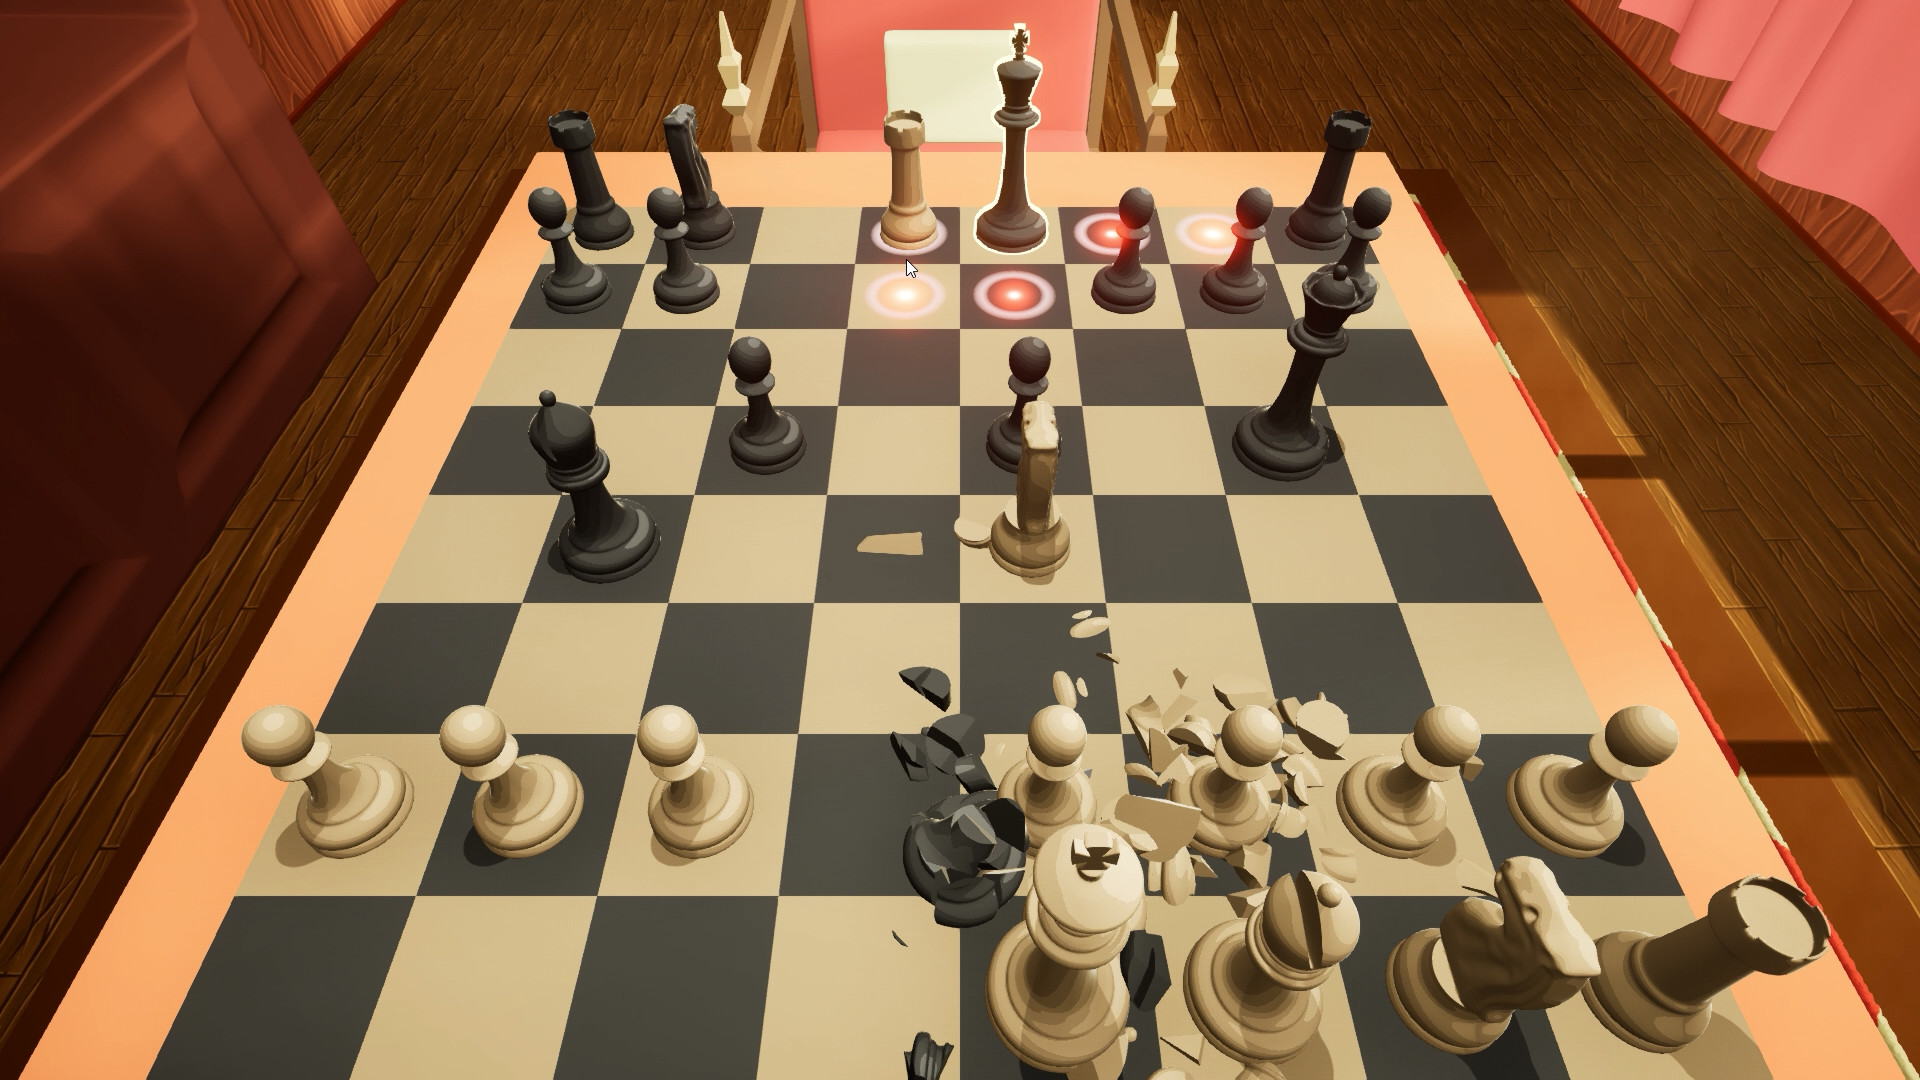 Brawl Chess, Aplicações de download da Nintendo Switch, Jogos